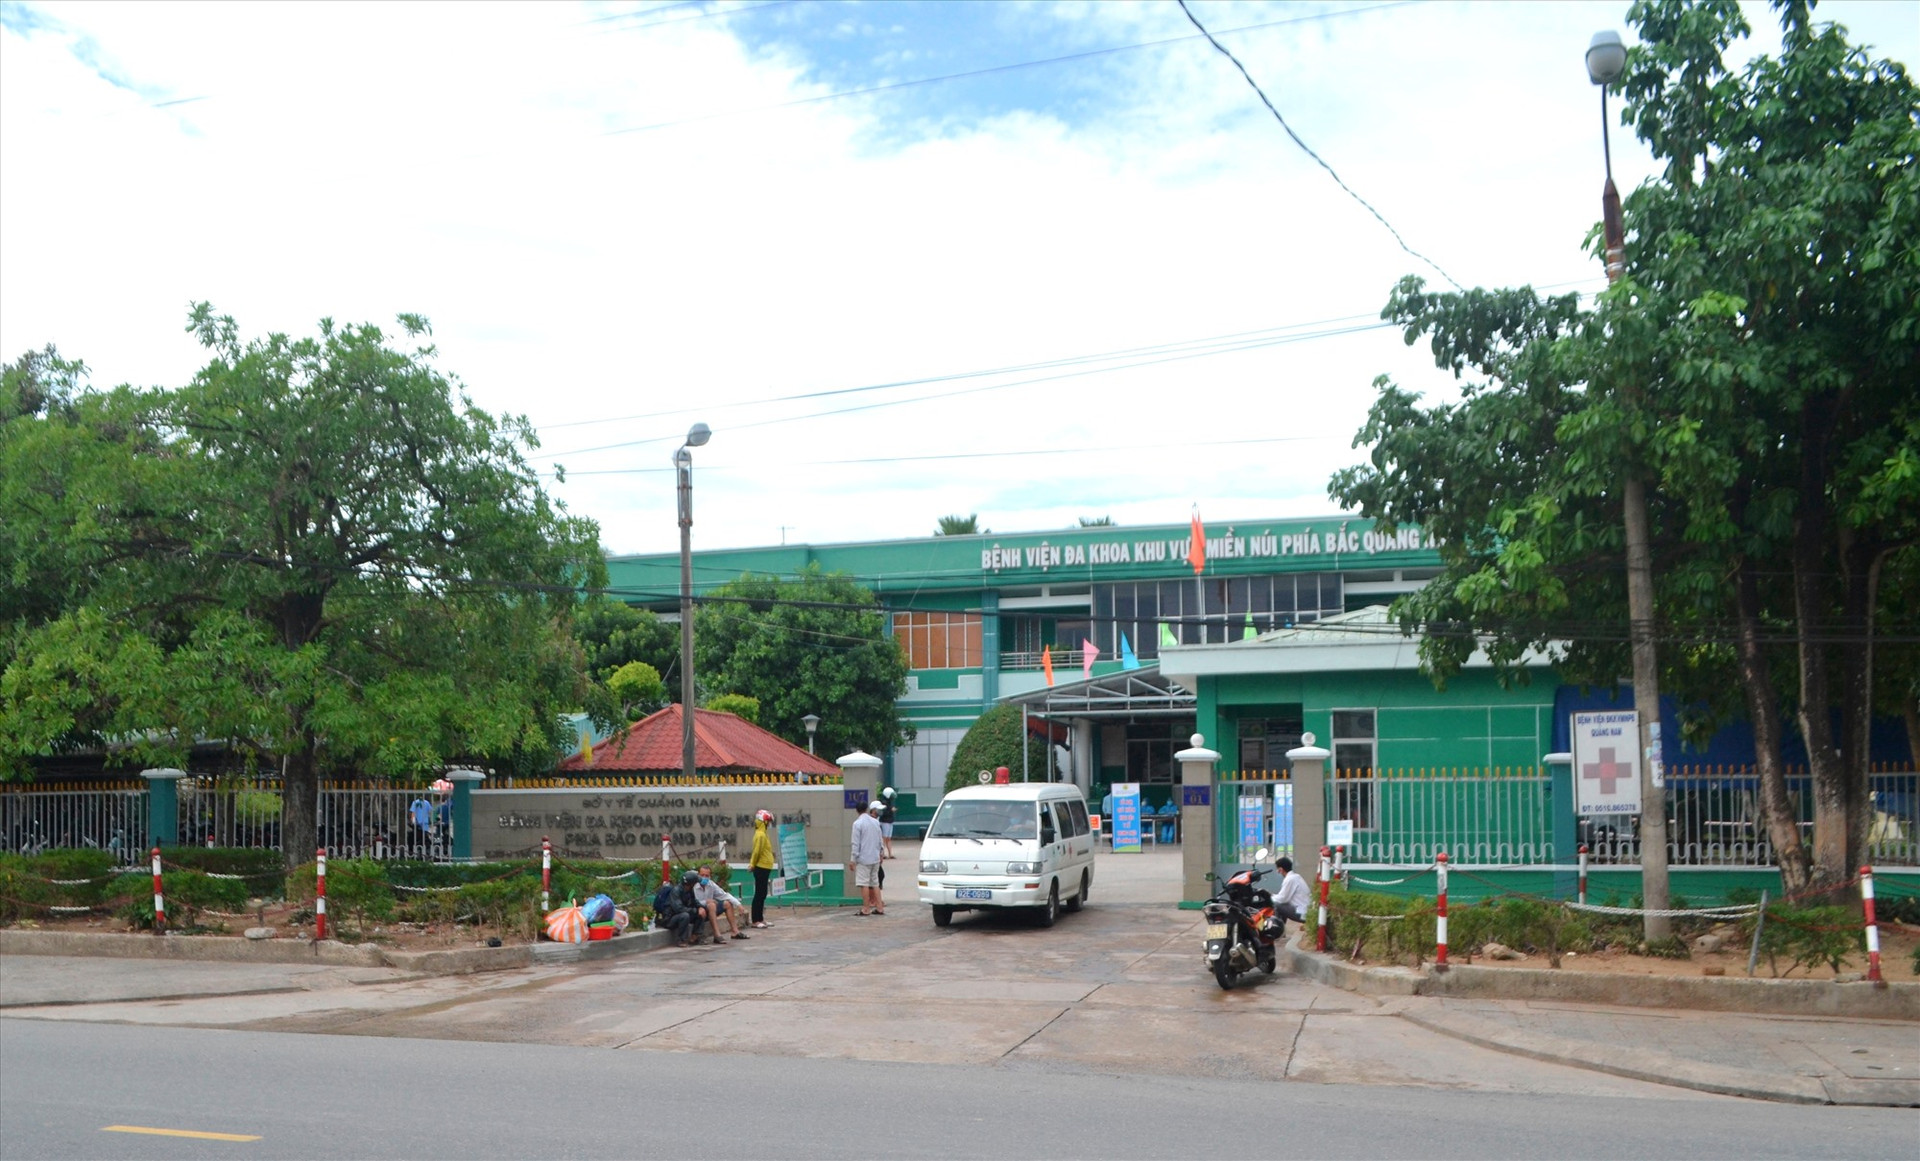 Bệnh viện ĐKKVMN phía Bắc Quảng Nam đang tiếp nhận bệnh nhân đến khám và điều trị. Ảnh: CT